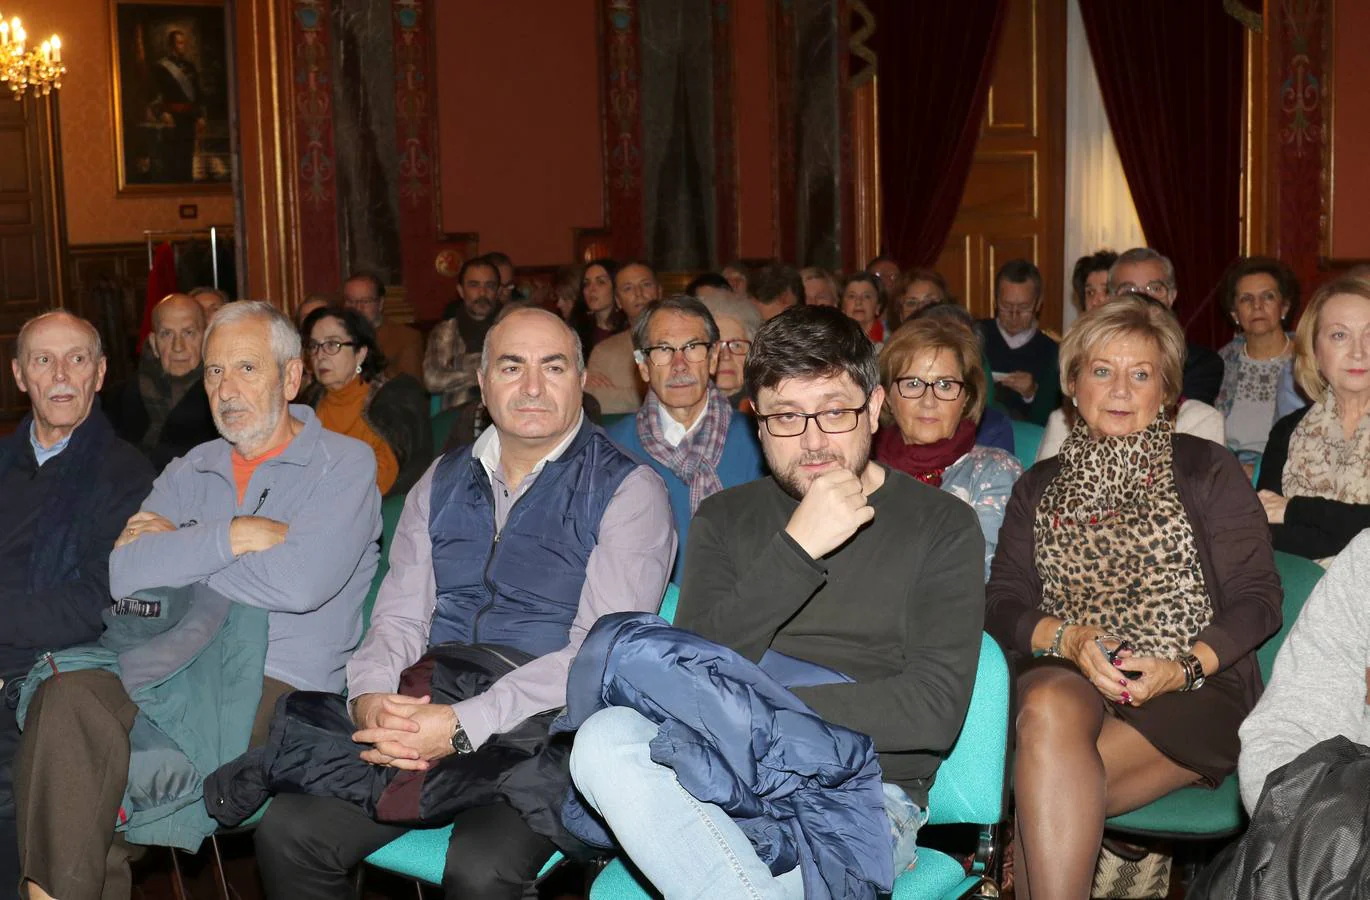 El historiador y jesuita ofreció una conferencia sobre su último libro, 'Viaje al corazón de España' en el Salón del Trono del Palacio Real de Valladolid